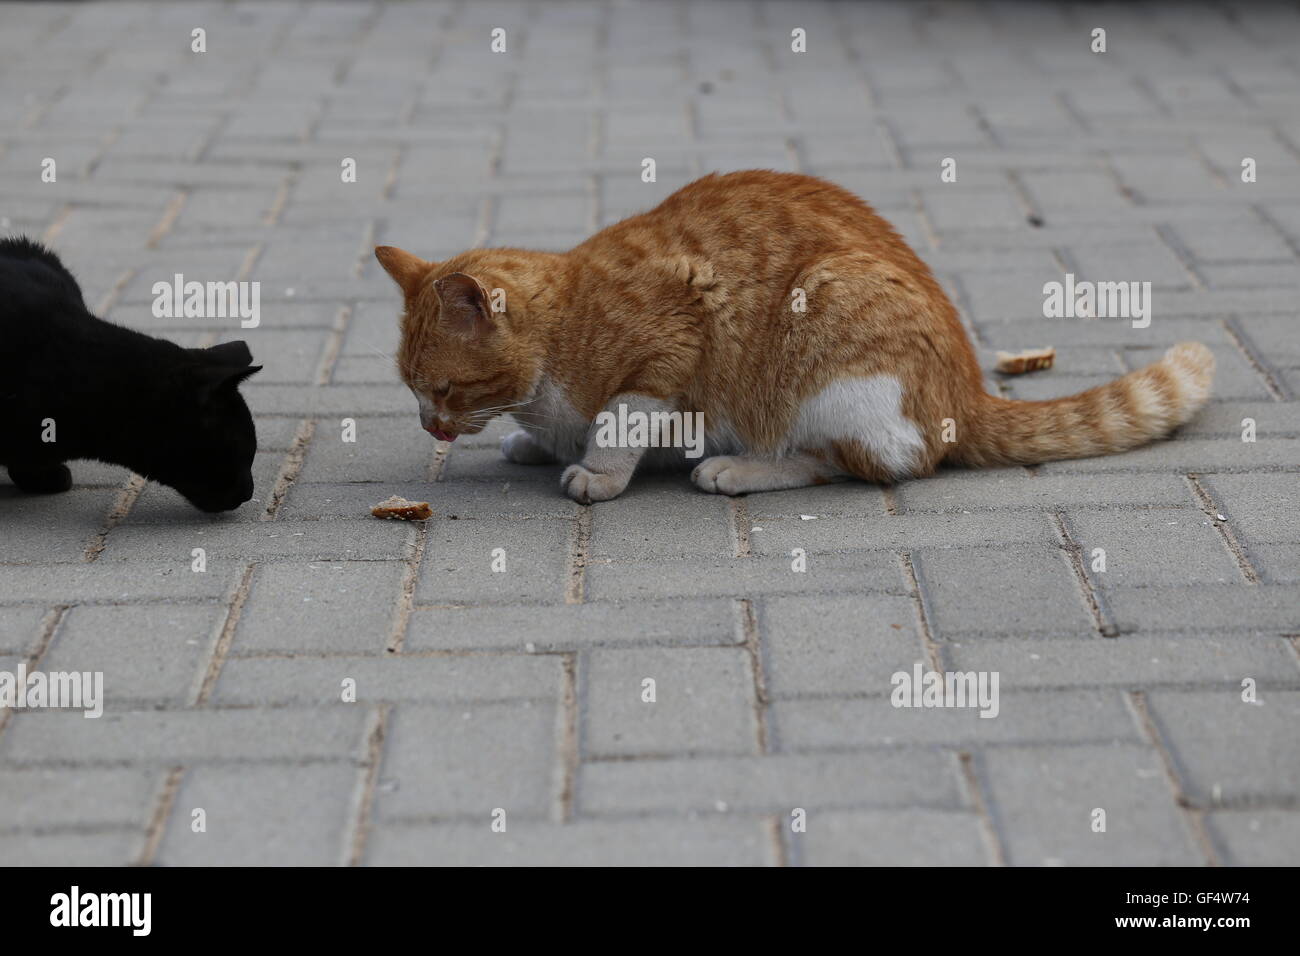 Katzen sammelt in der Nähe von Essen. Ginger cat und schwarze Katze will ein Stück Brot auf den Bürgersteig zu essen. Zwei hungrige Katzen sammelt in der Nähe der Straße ein Stück Brot. Stockfoto